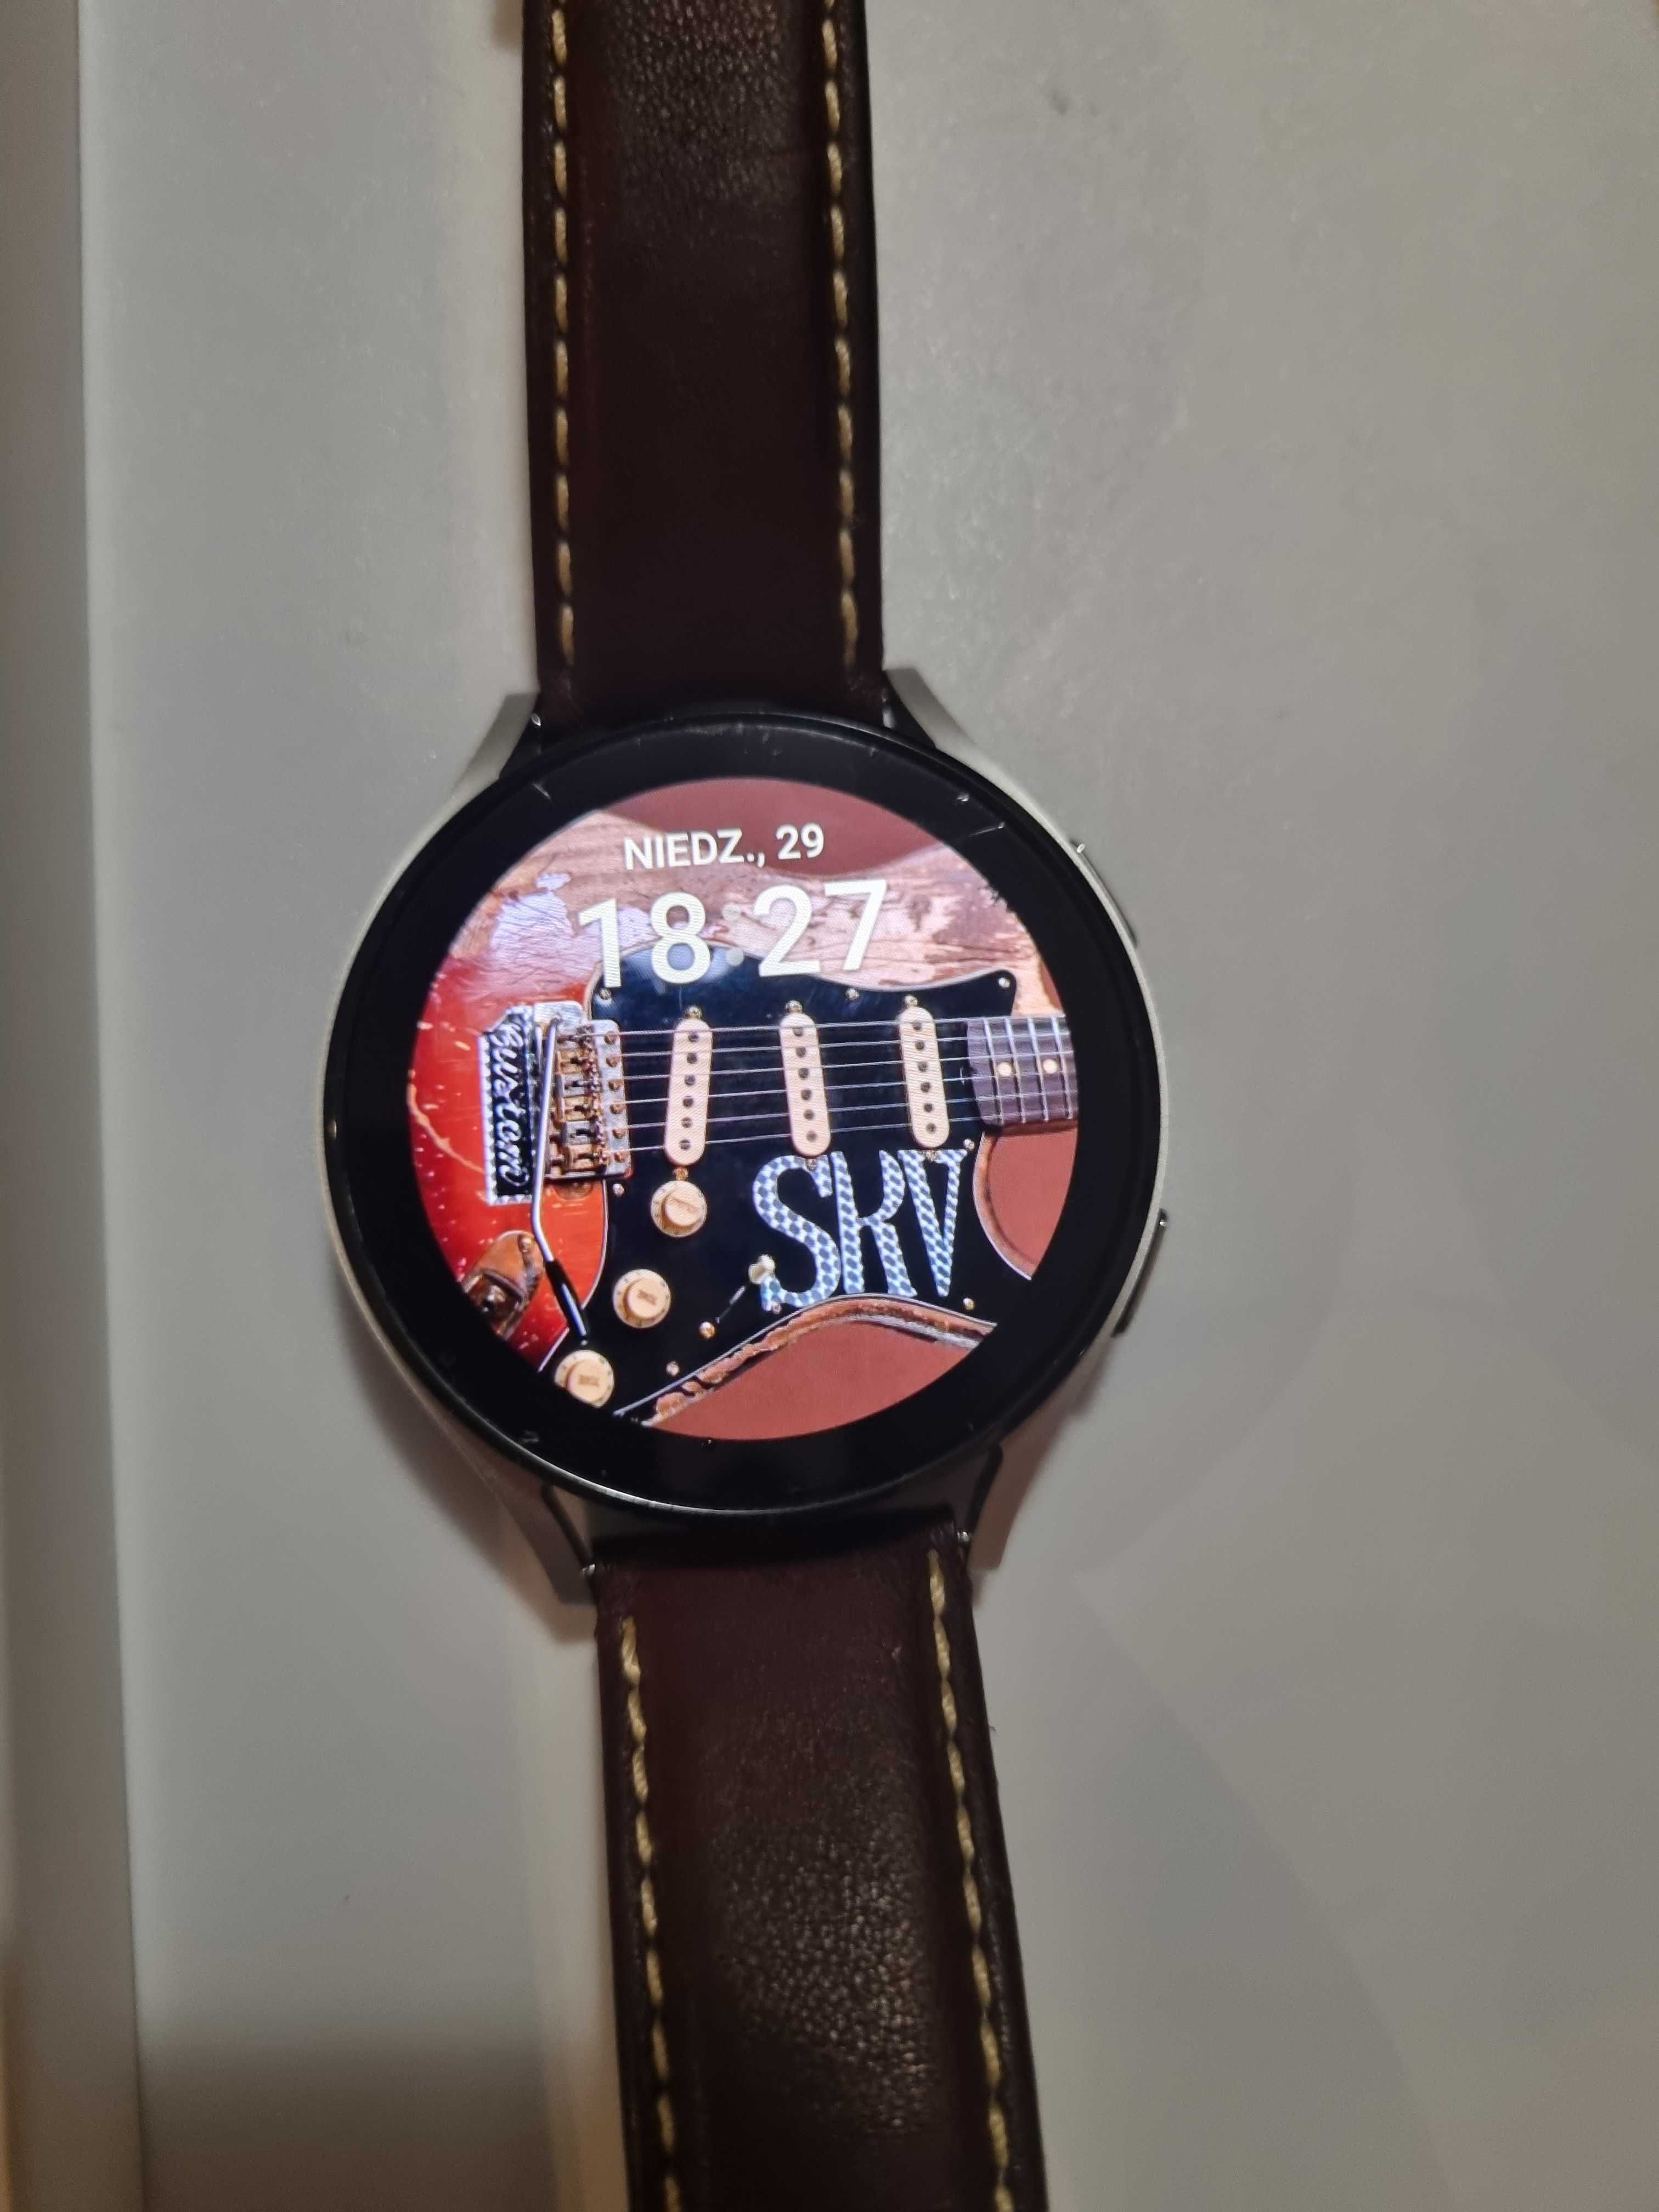 Smartwatch Samsung Galaxy Watch4 - 44mm z dodatkami, na gwarancji